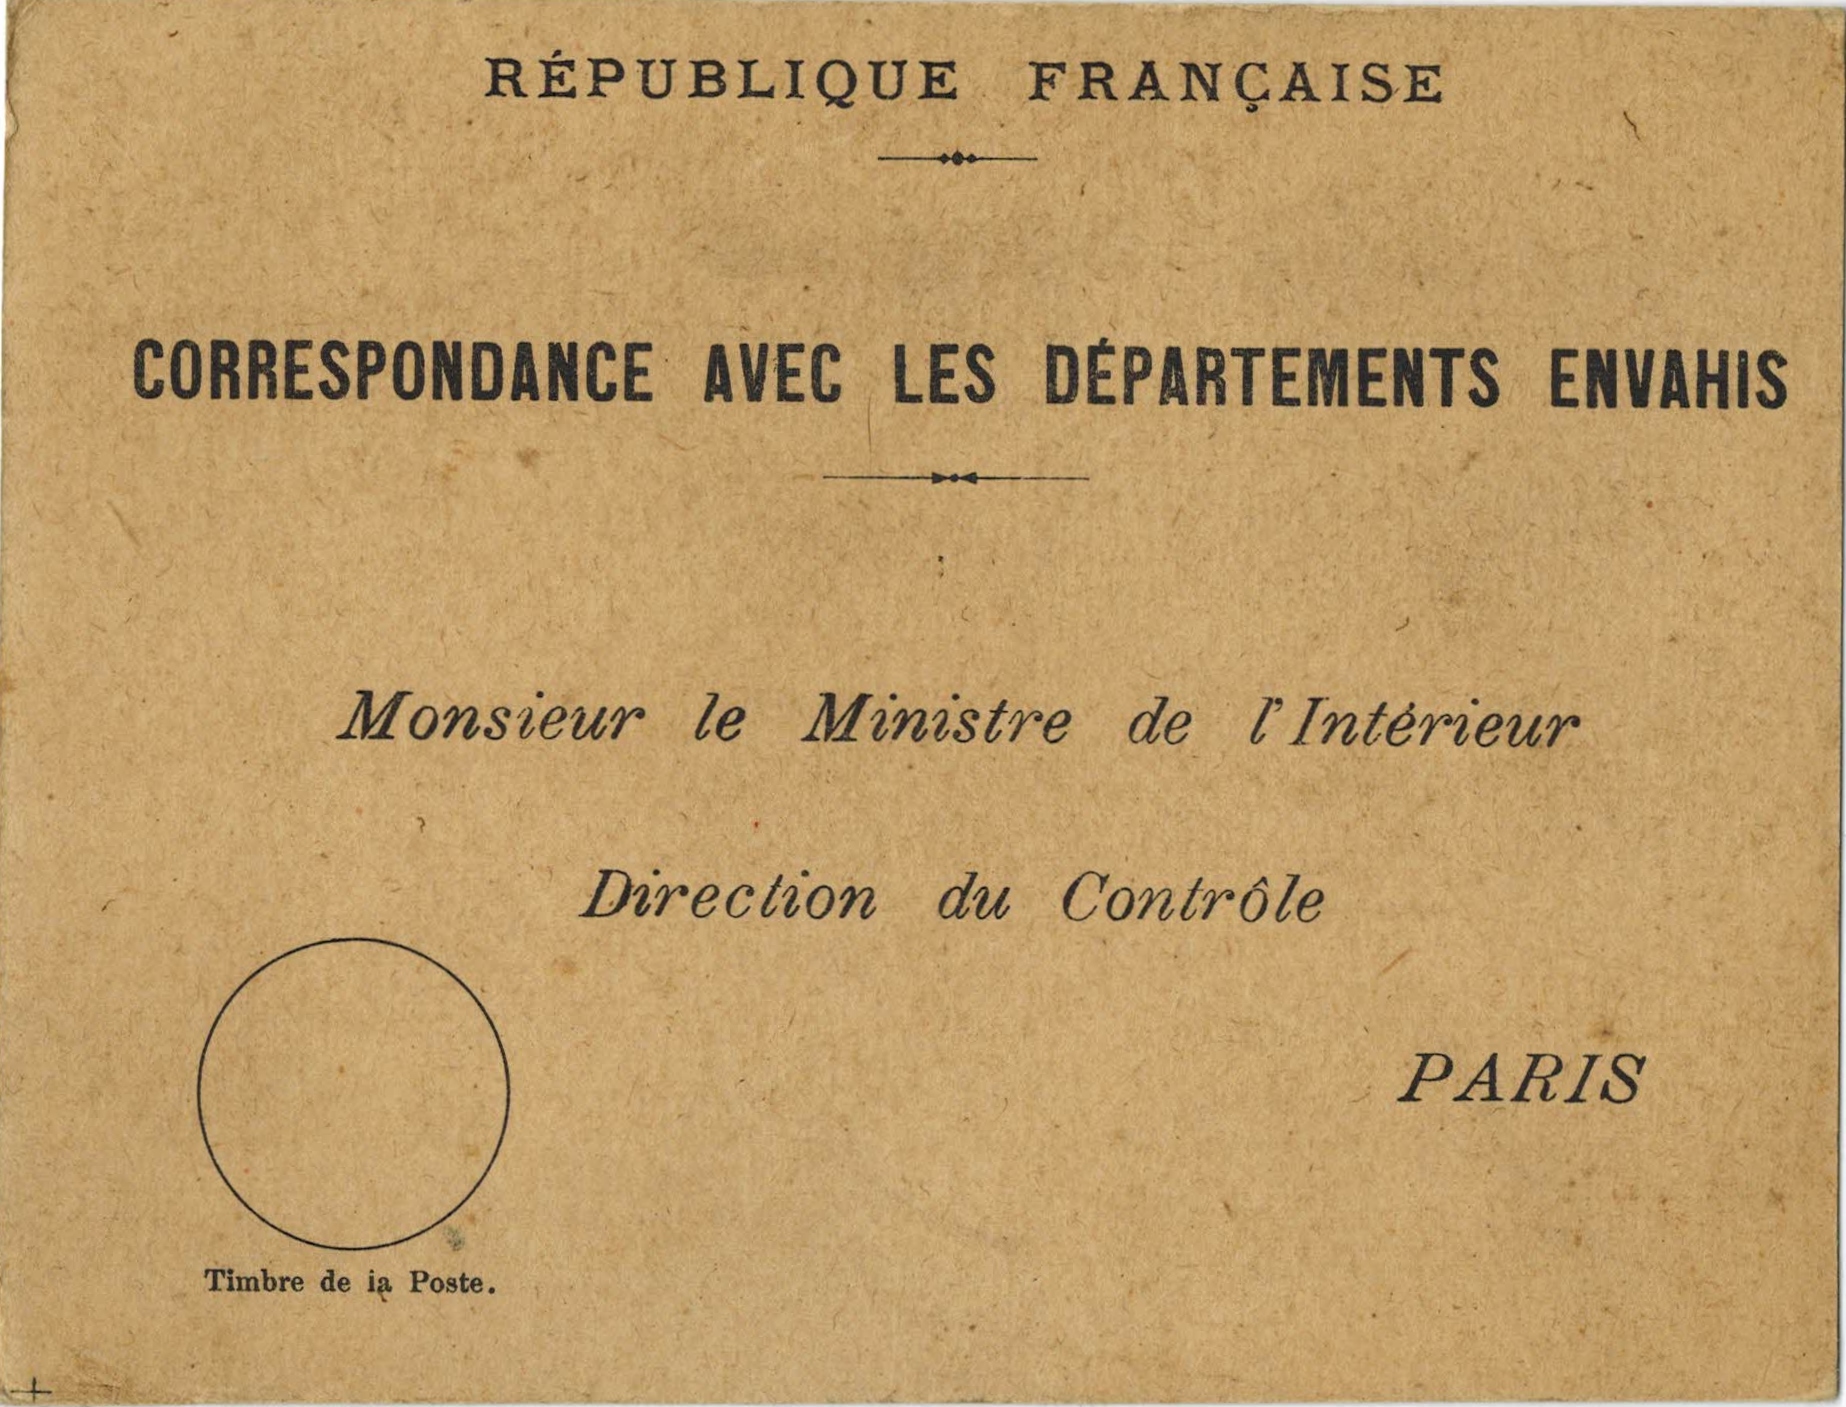 フランス内務省への問合わせ用の葉書